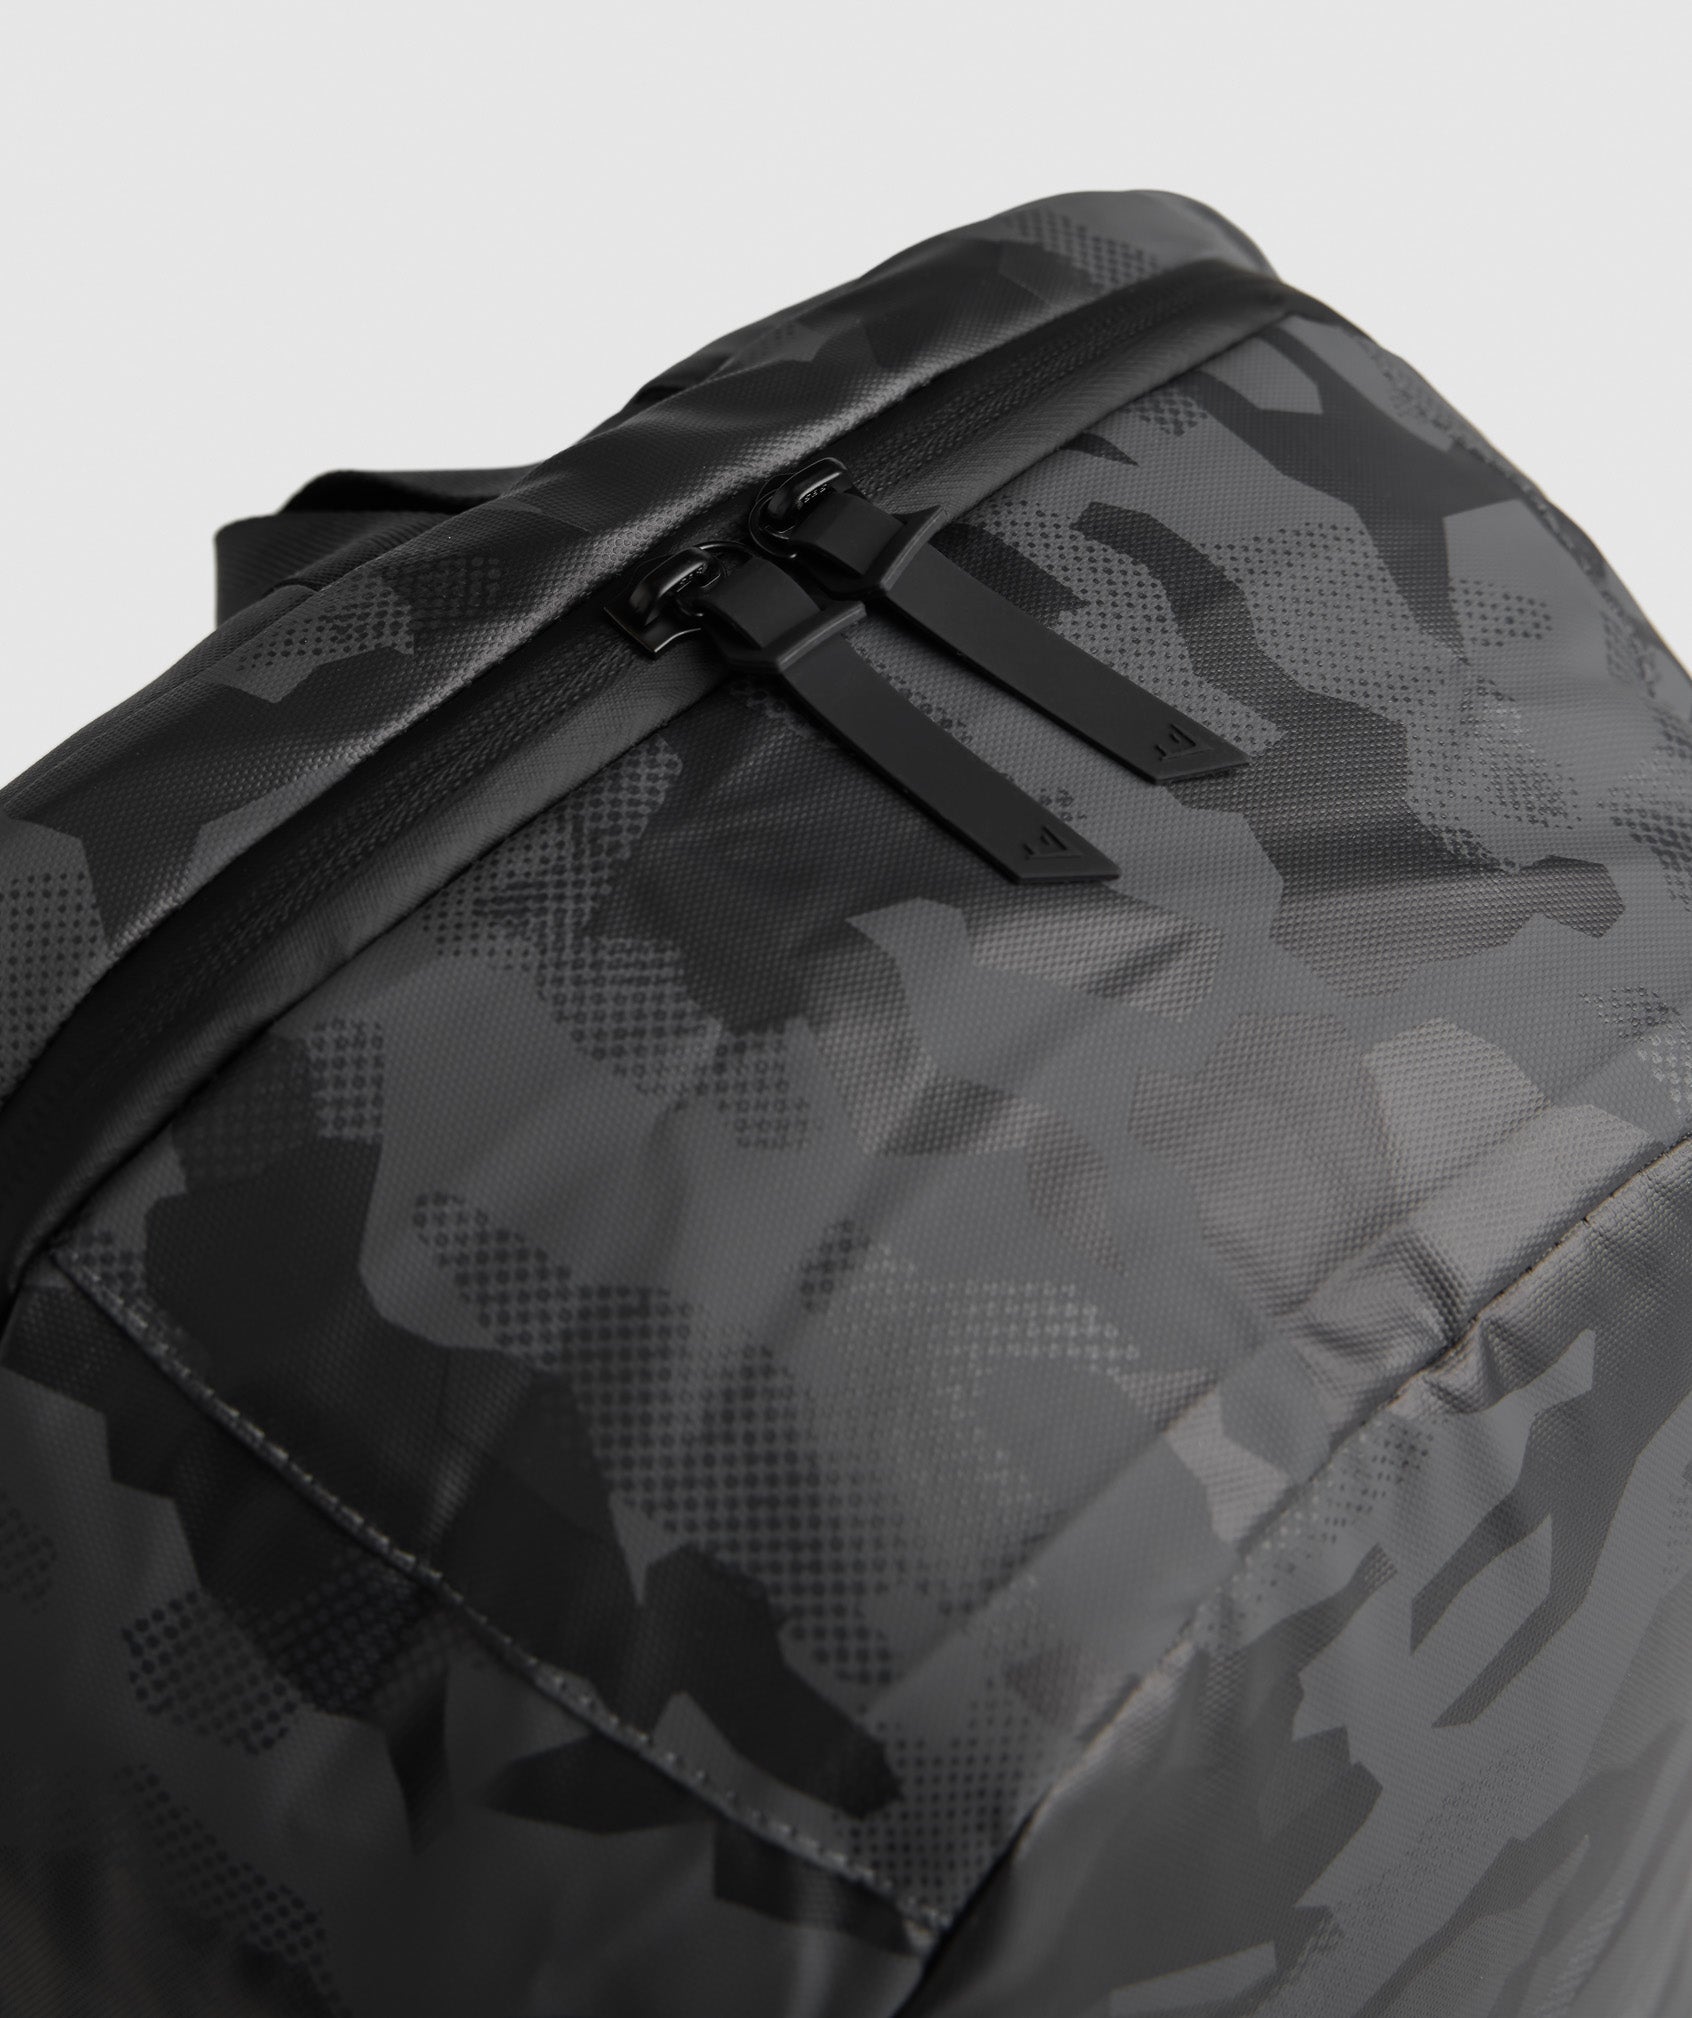  X-Series 0.1 Backpack in Black Print - view 5